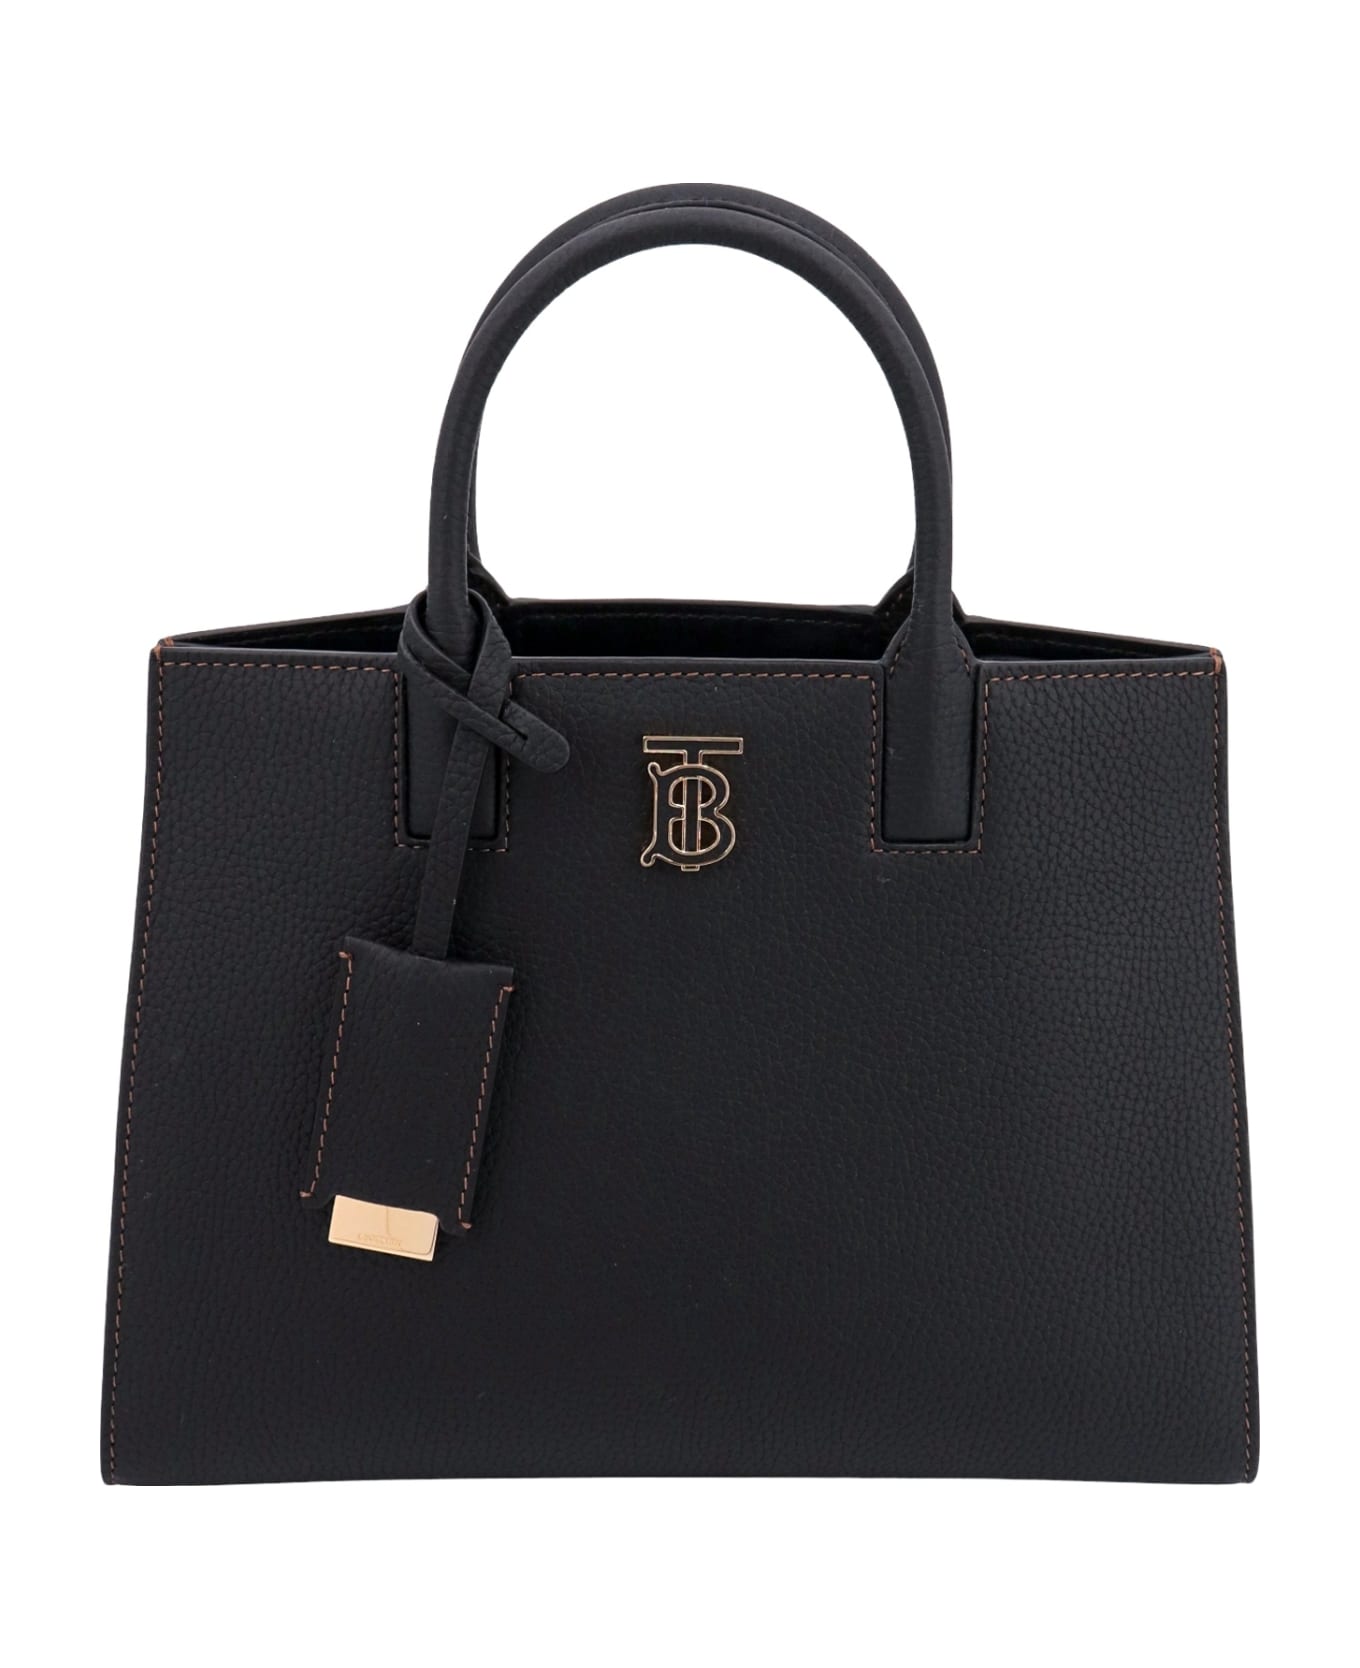 Burberry Frances Handbag - Black